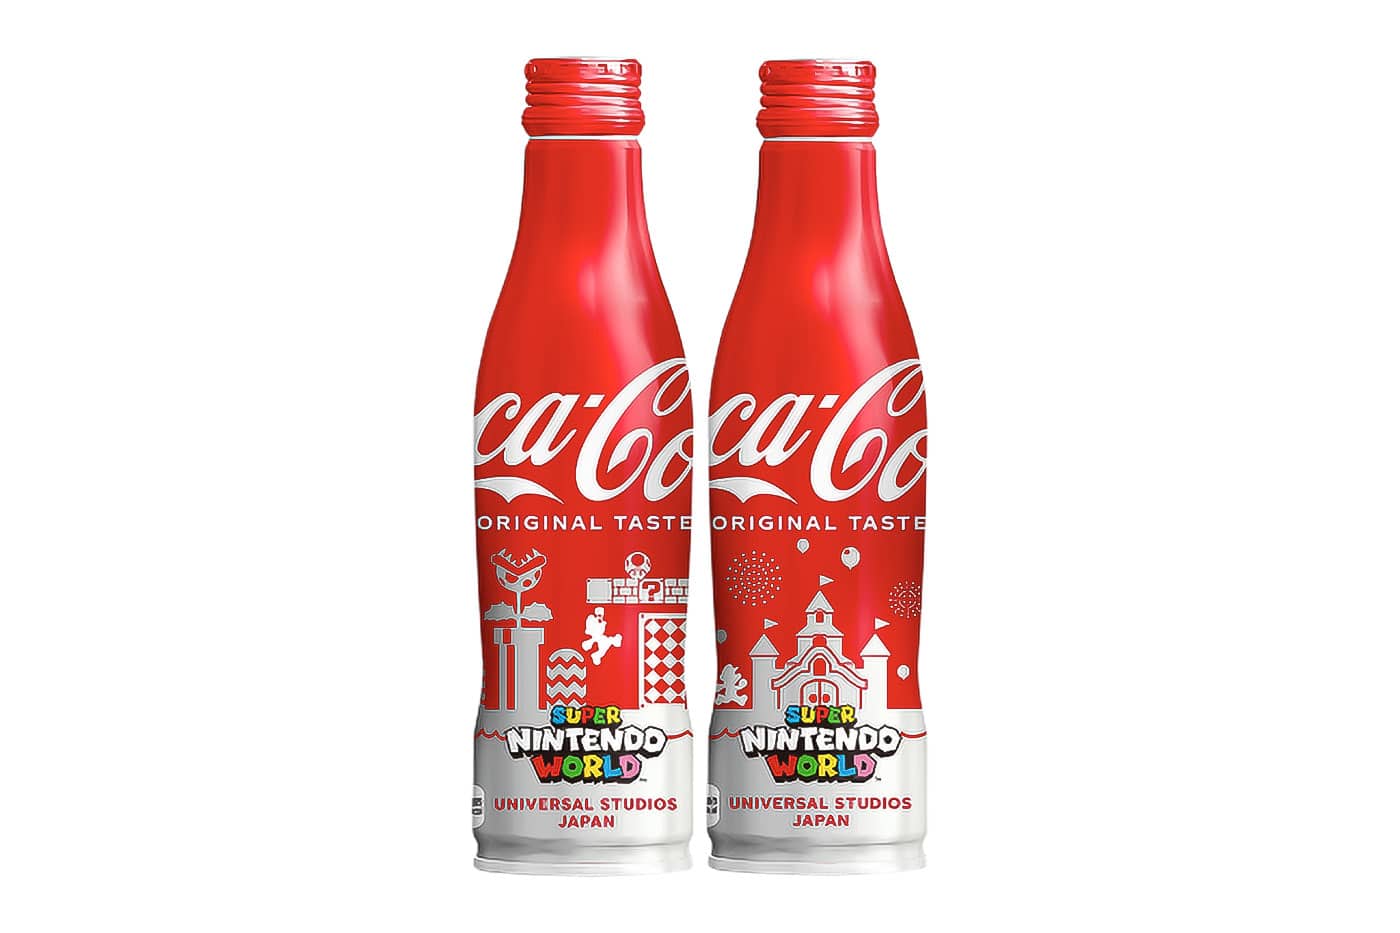 coca-cola-japan-super-nintendo-world-bottle-design